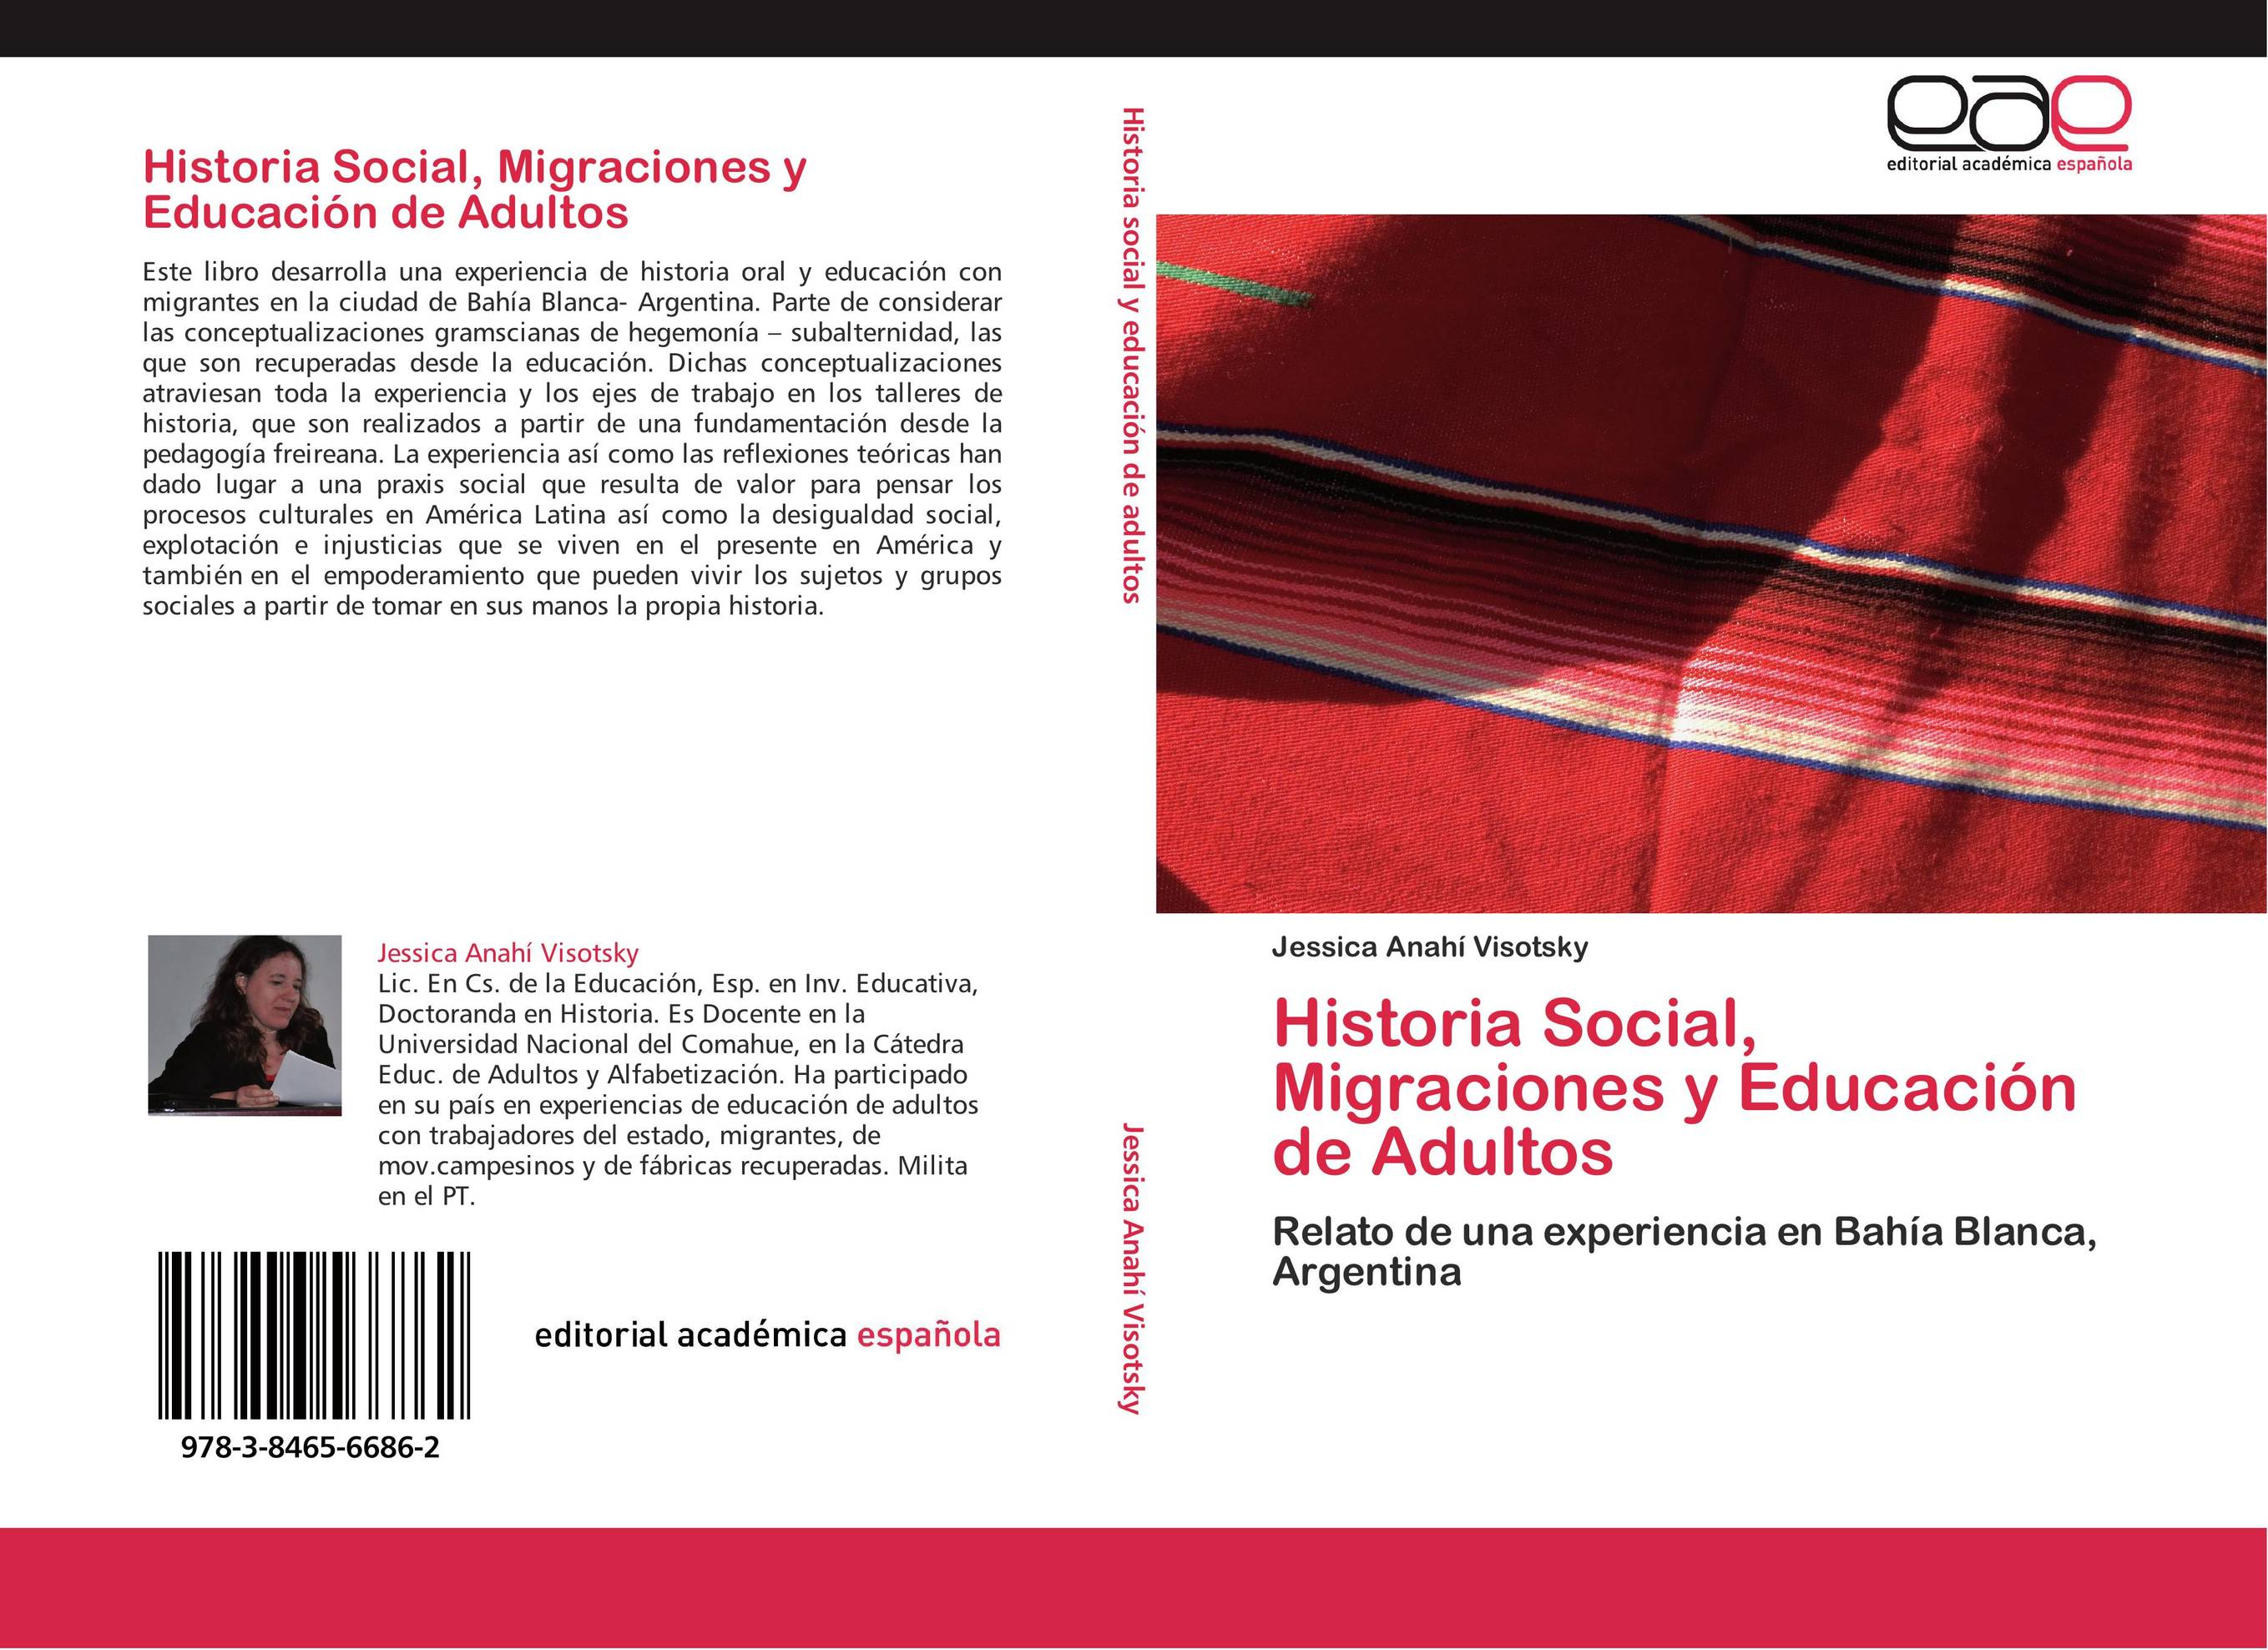 Historia Social, Migraciones y Educación de Adultos